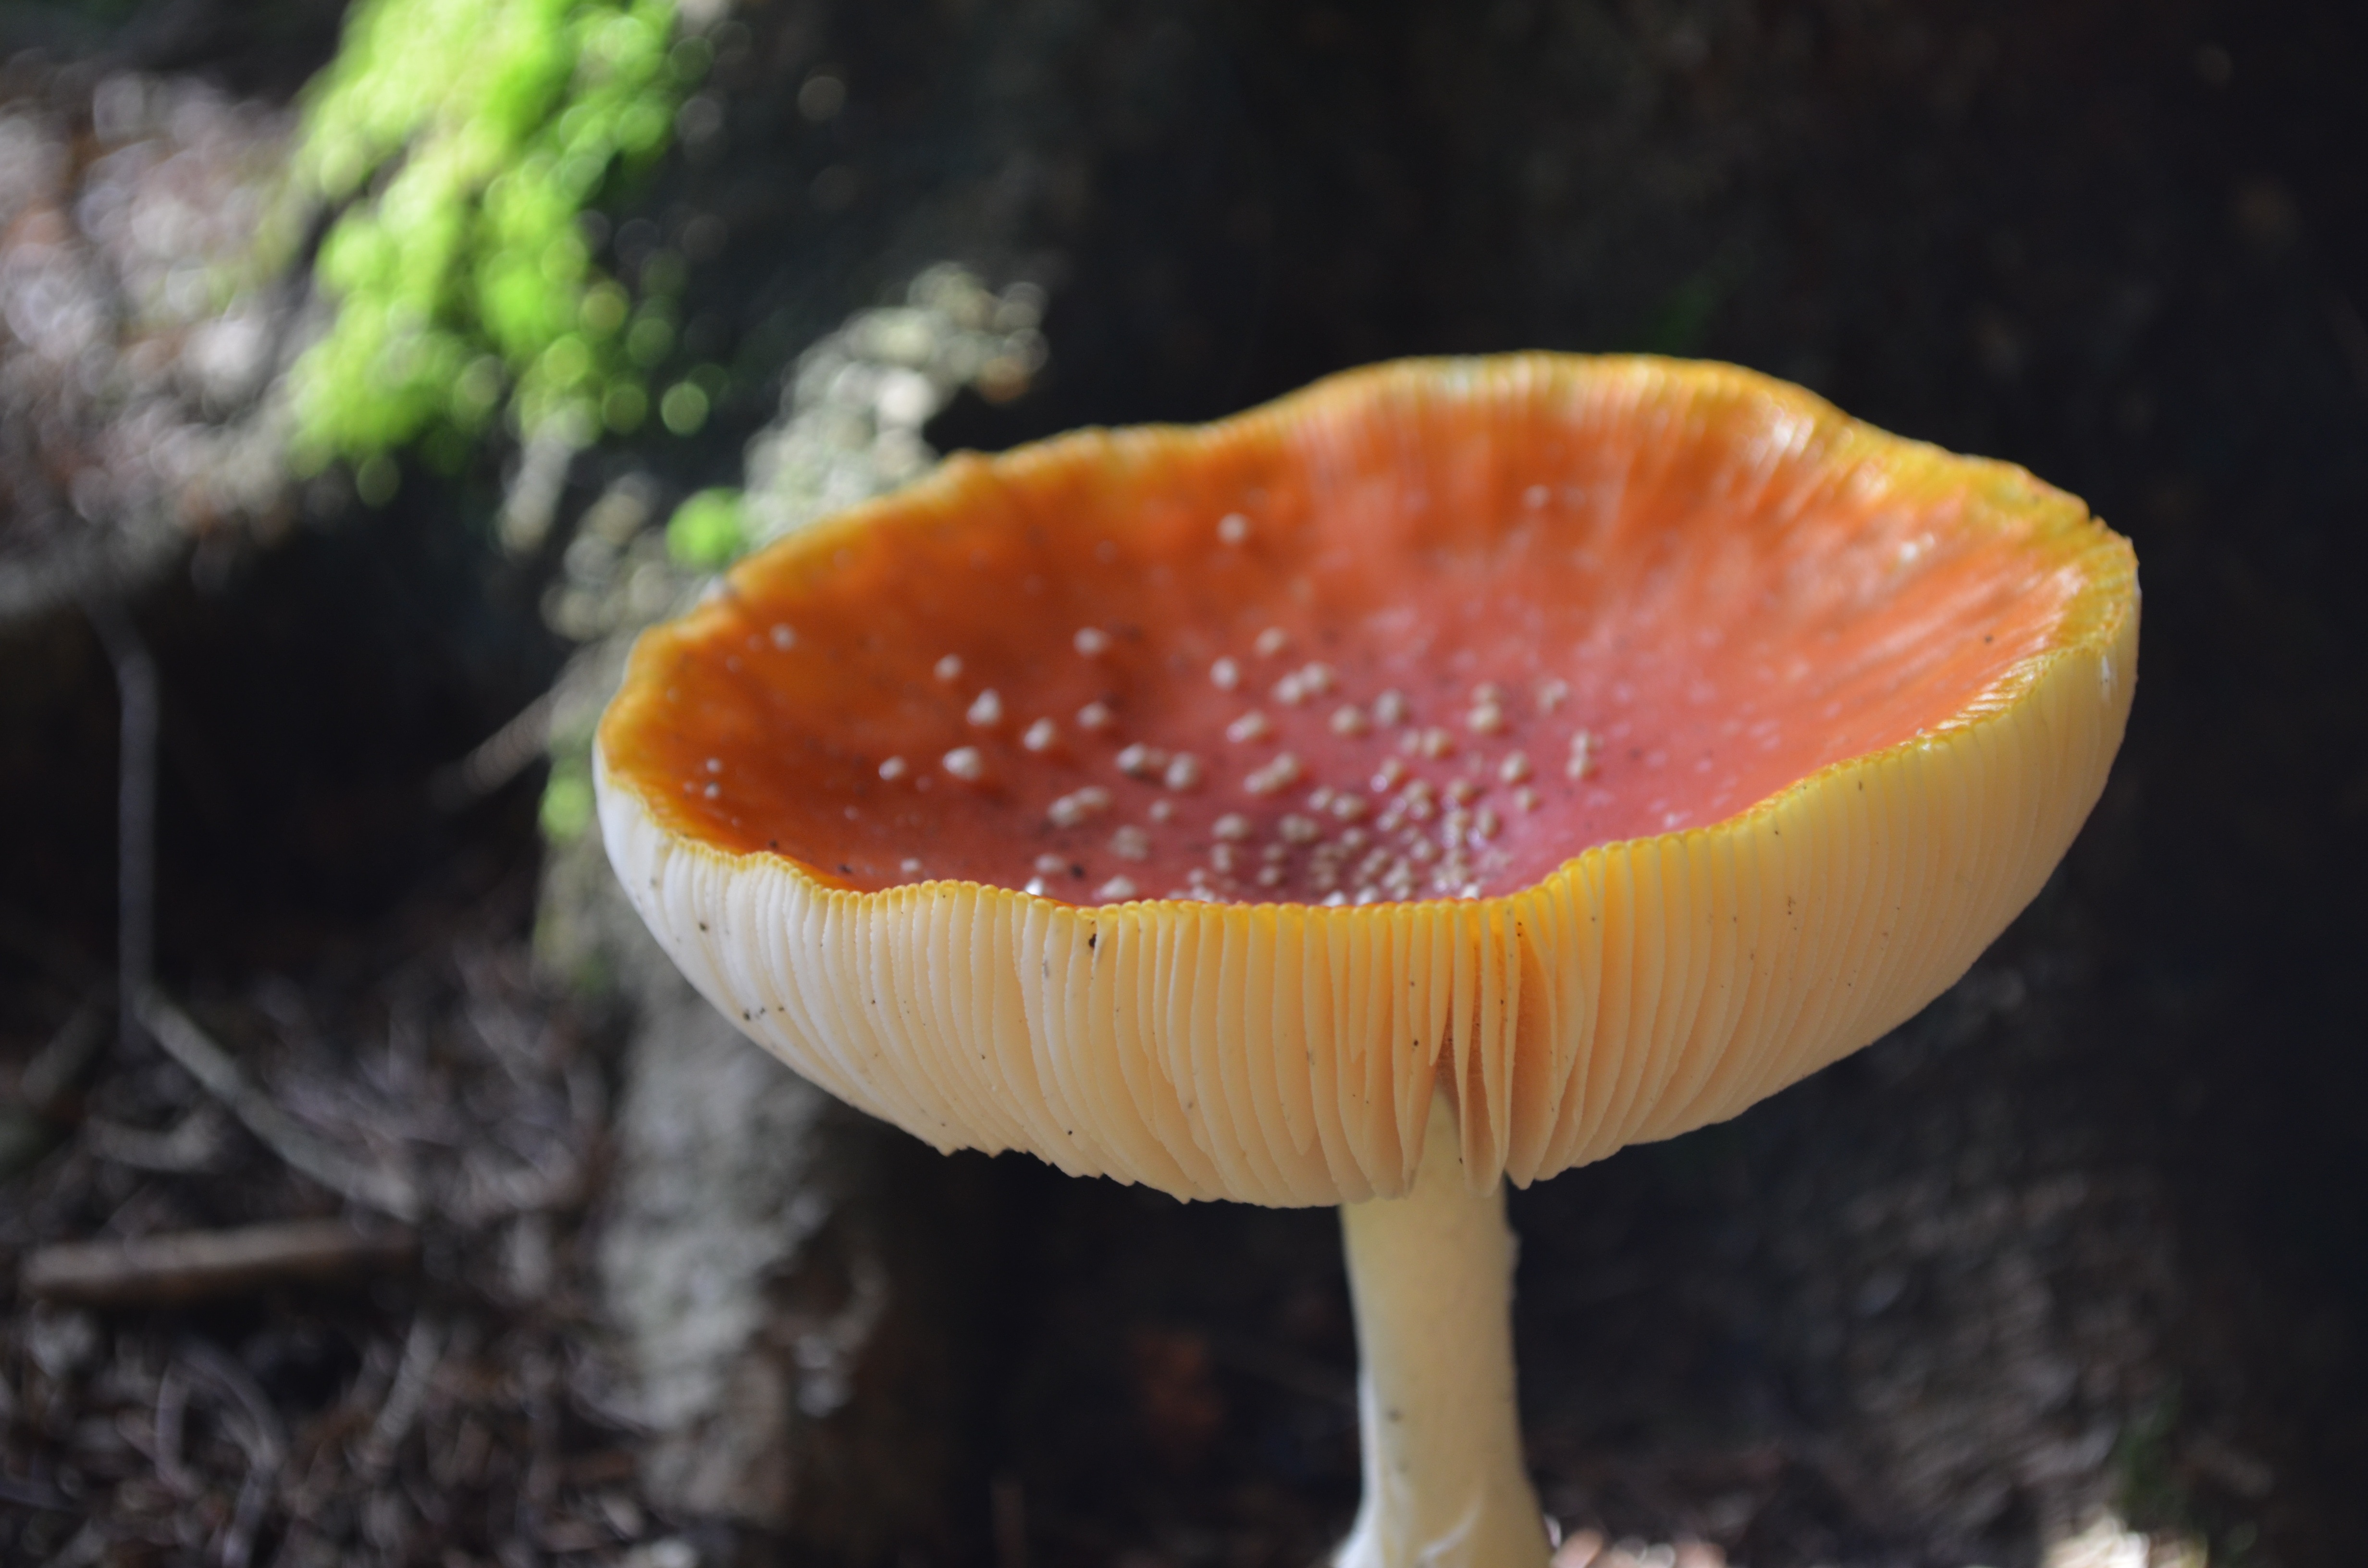 yellow and orange wild mushroom